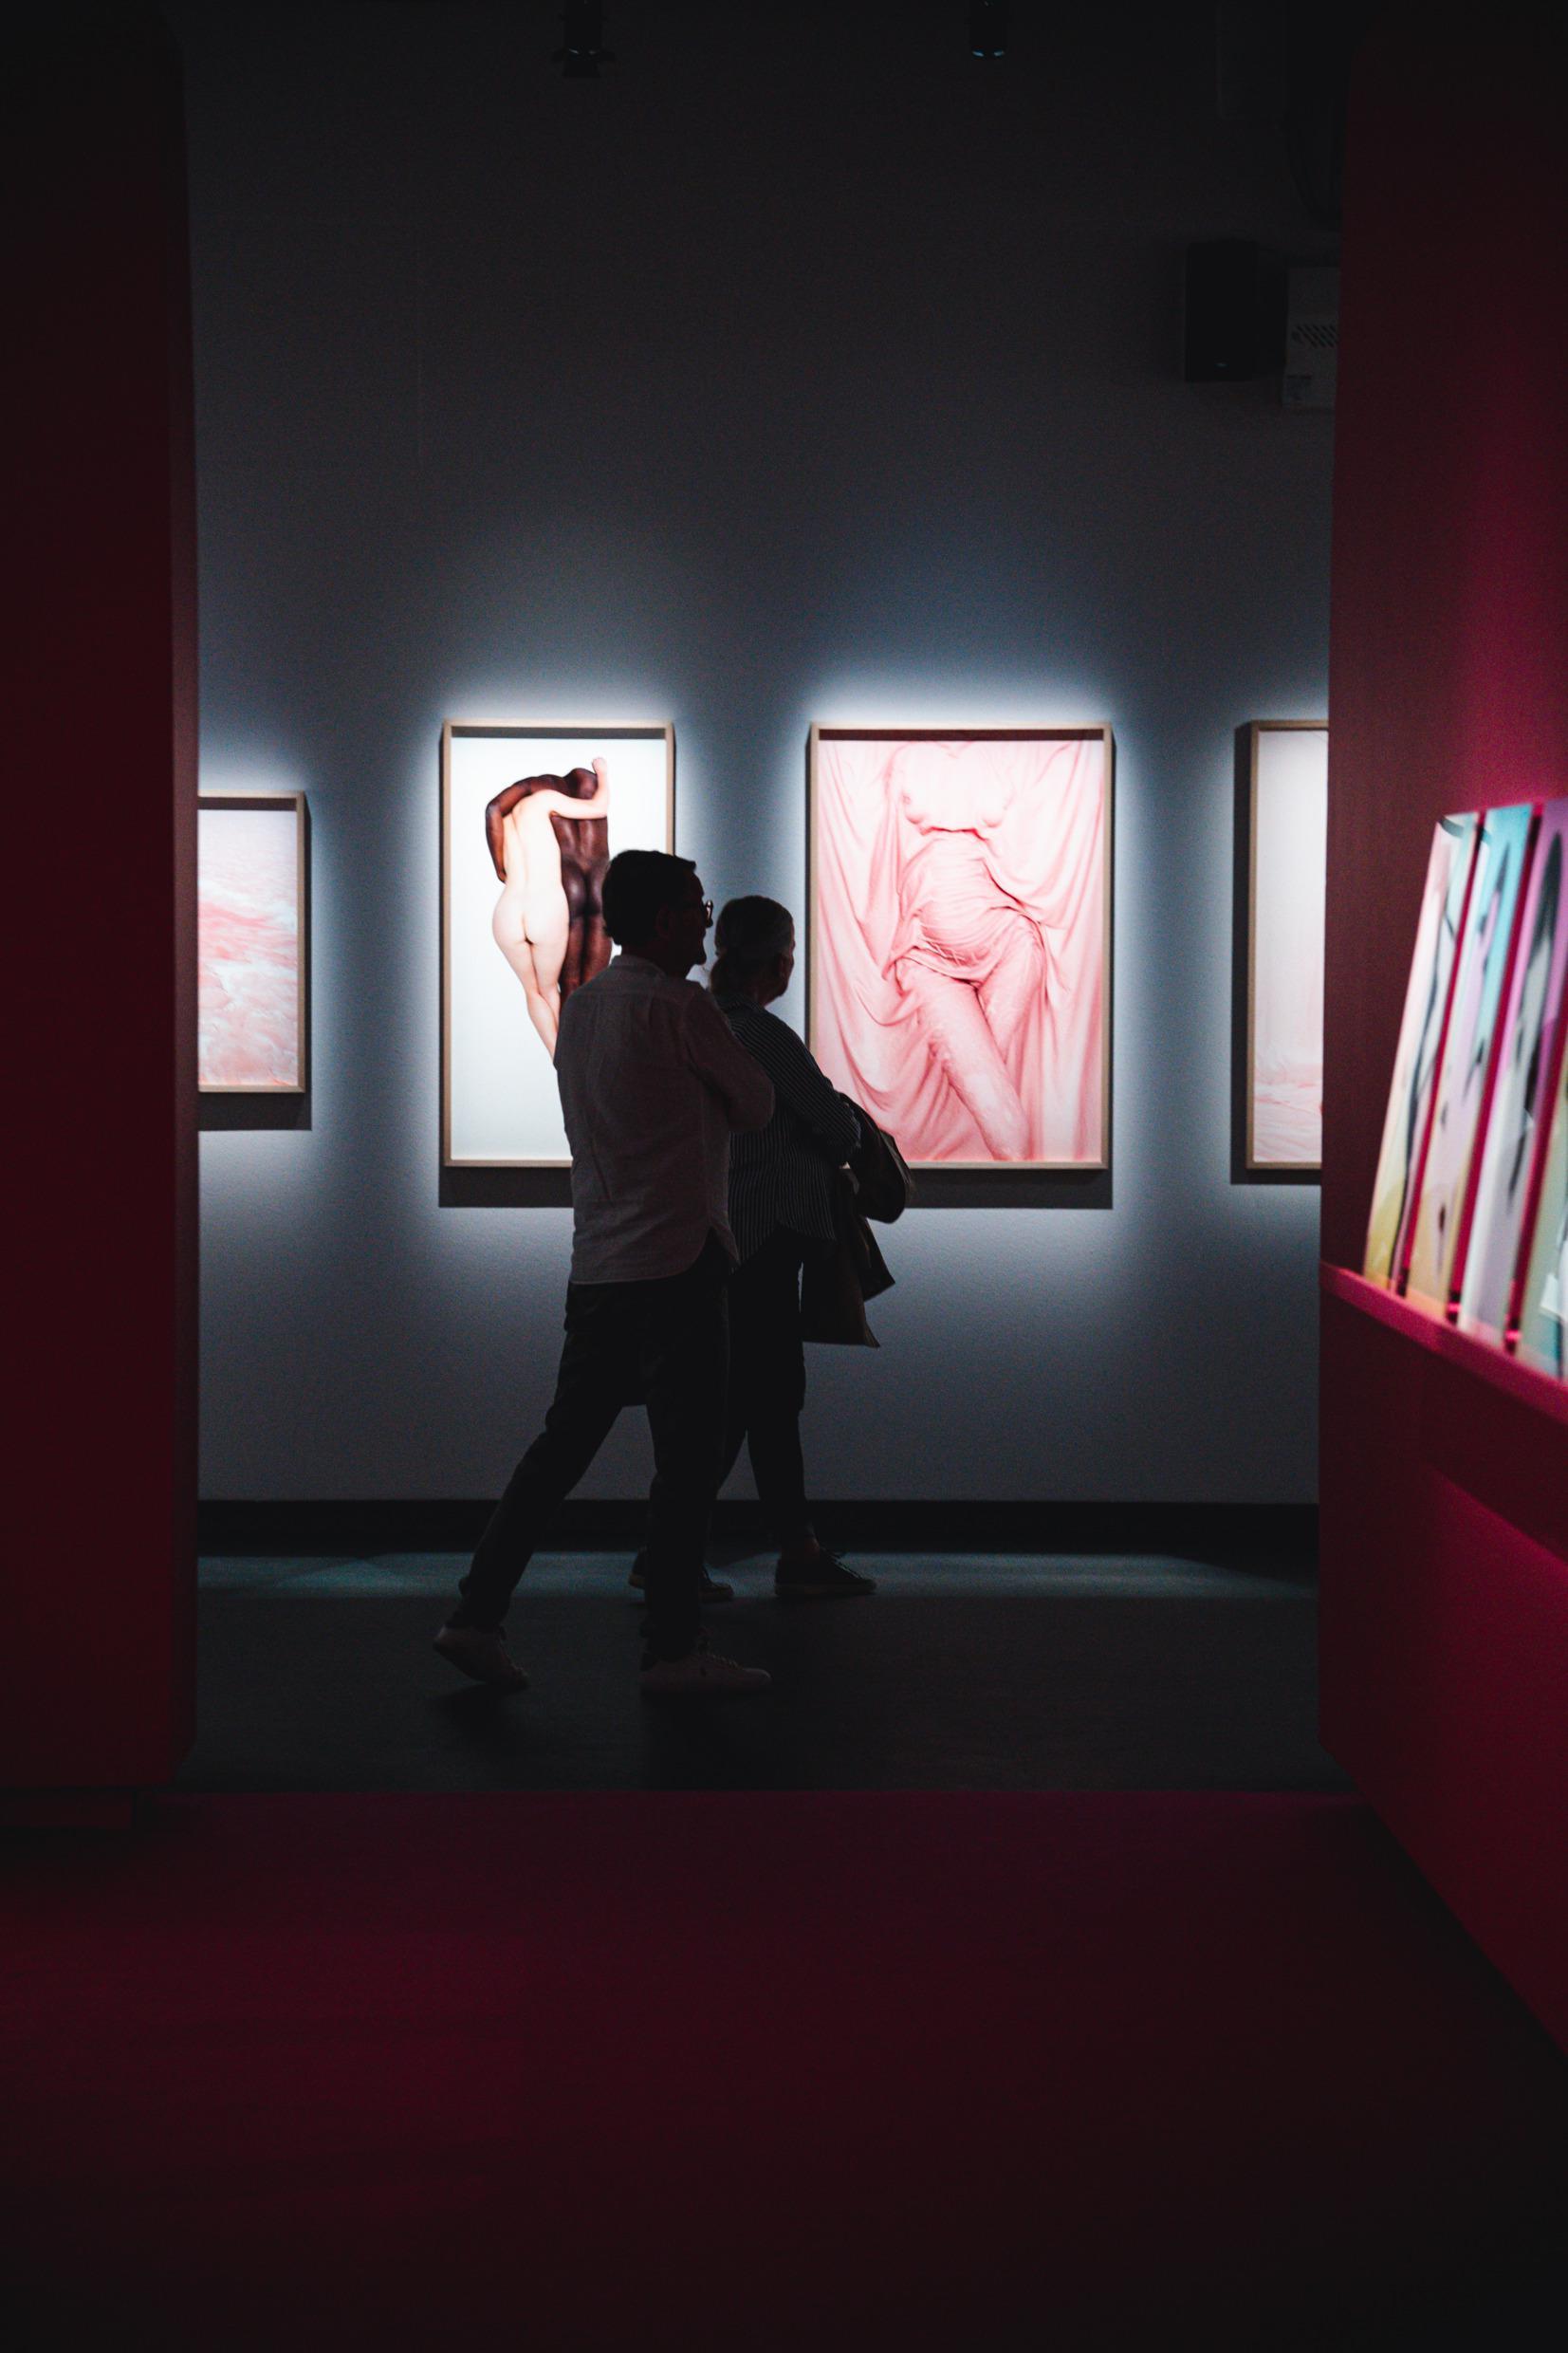 Deux personnes en train de marcher dans une salle d'expositions avec des photographies au mur.